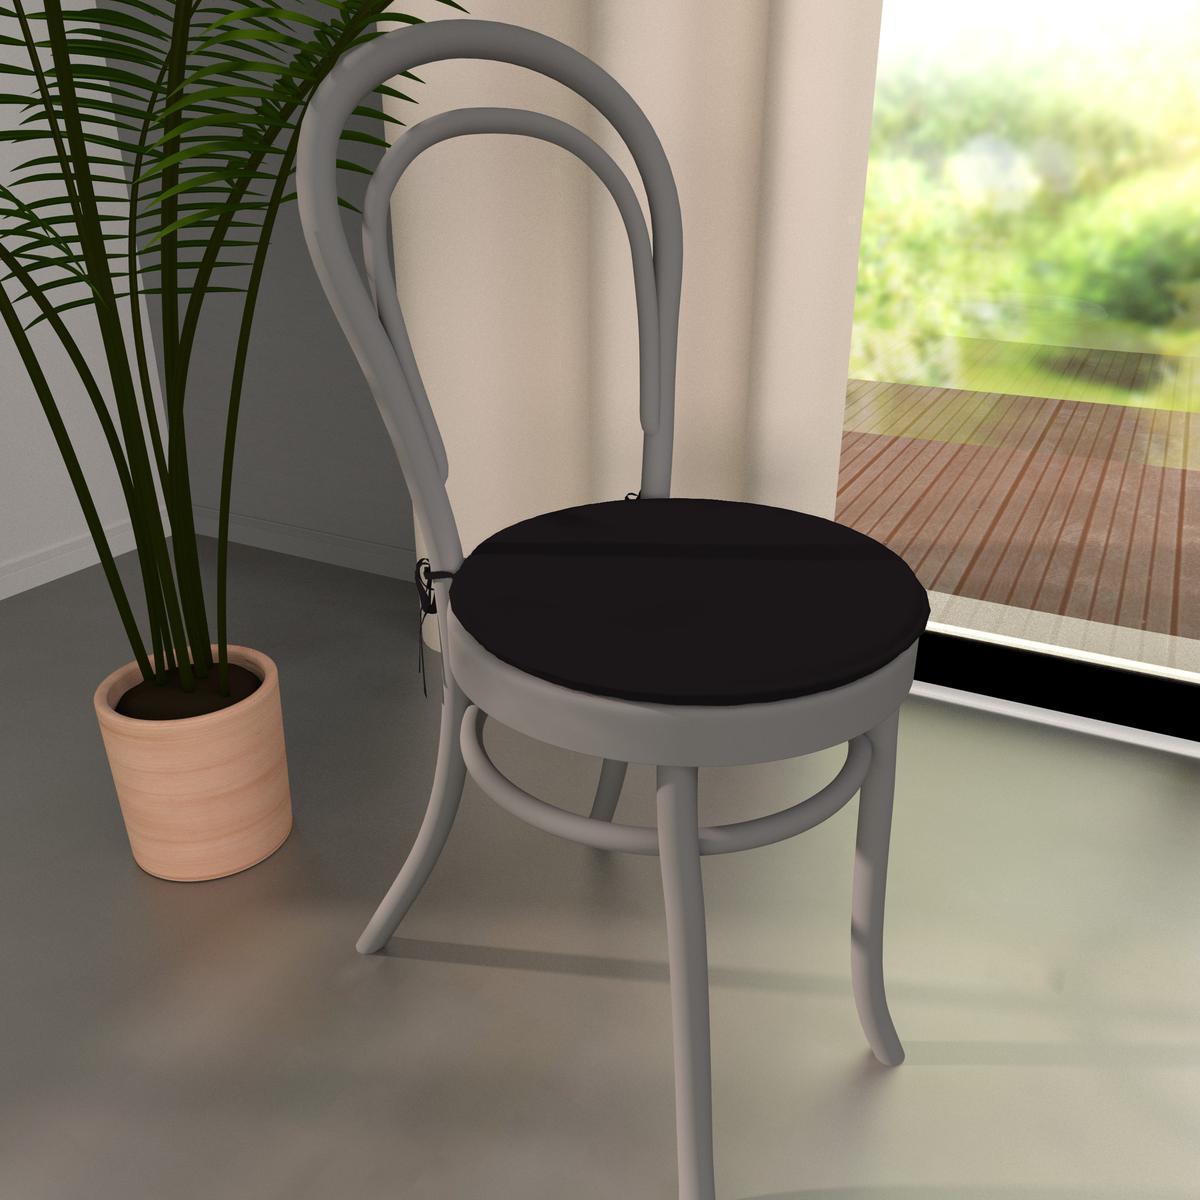 Galette de chaise ronde - 100% coton - diamètre 38cm - noir